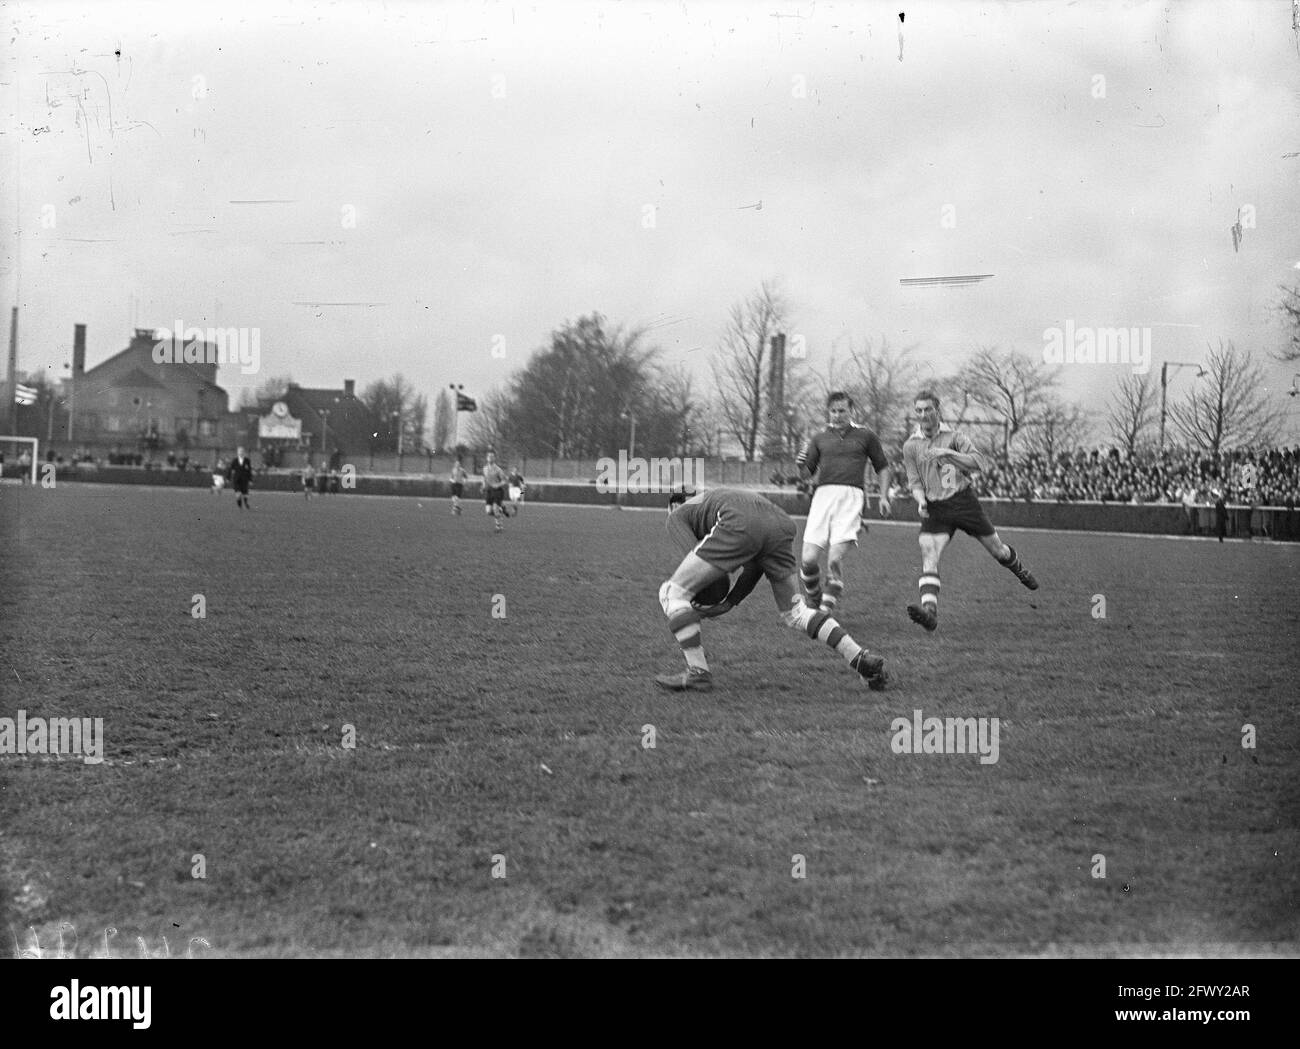 PSV / Emmen 1-1. Schotanus, 28 novembre 1947, sport, football, pays-Bas, photo de l'agence de presse du xxe siècle, nouvelles à retenir Banque D'Images